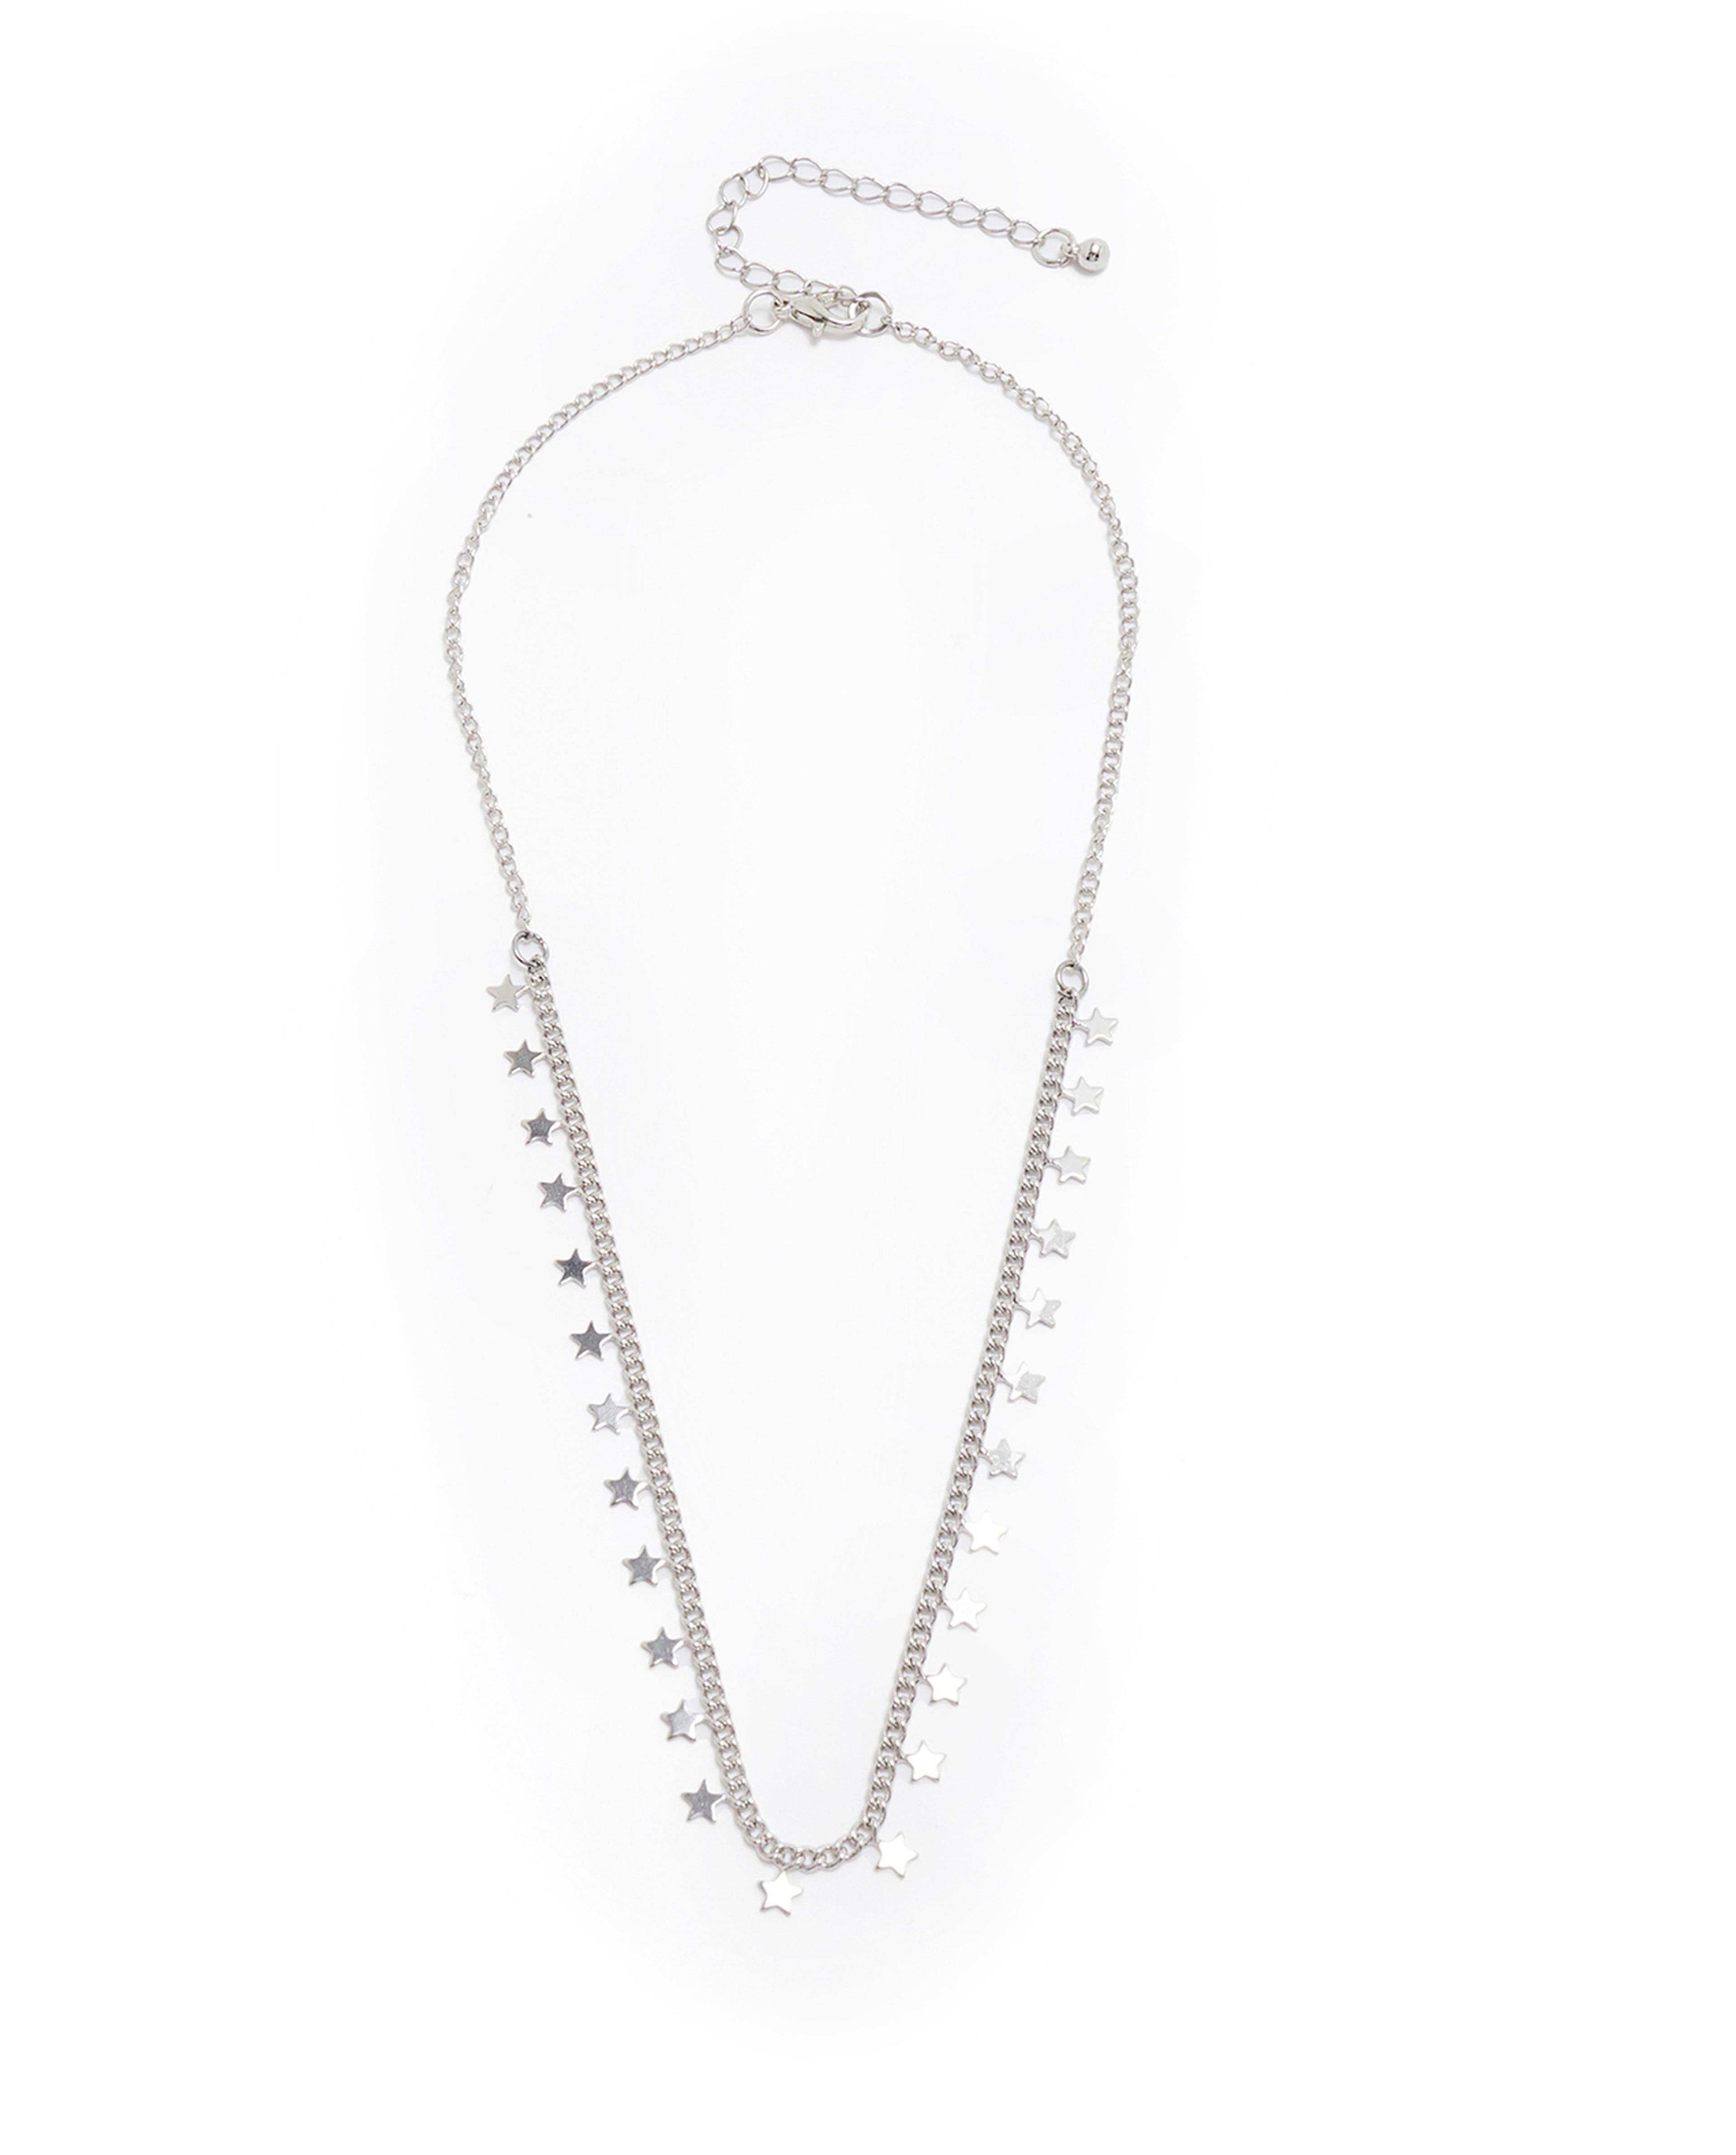 3 Piece Silver-Tone Necklaces